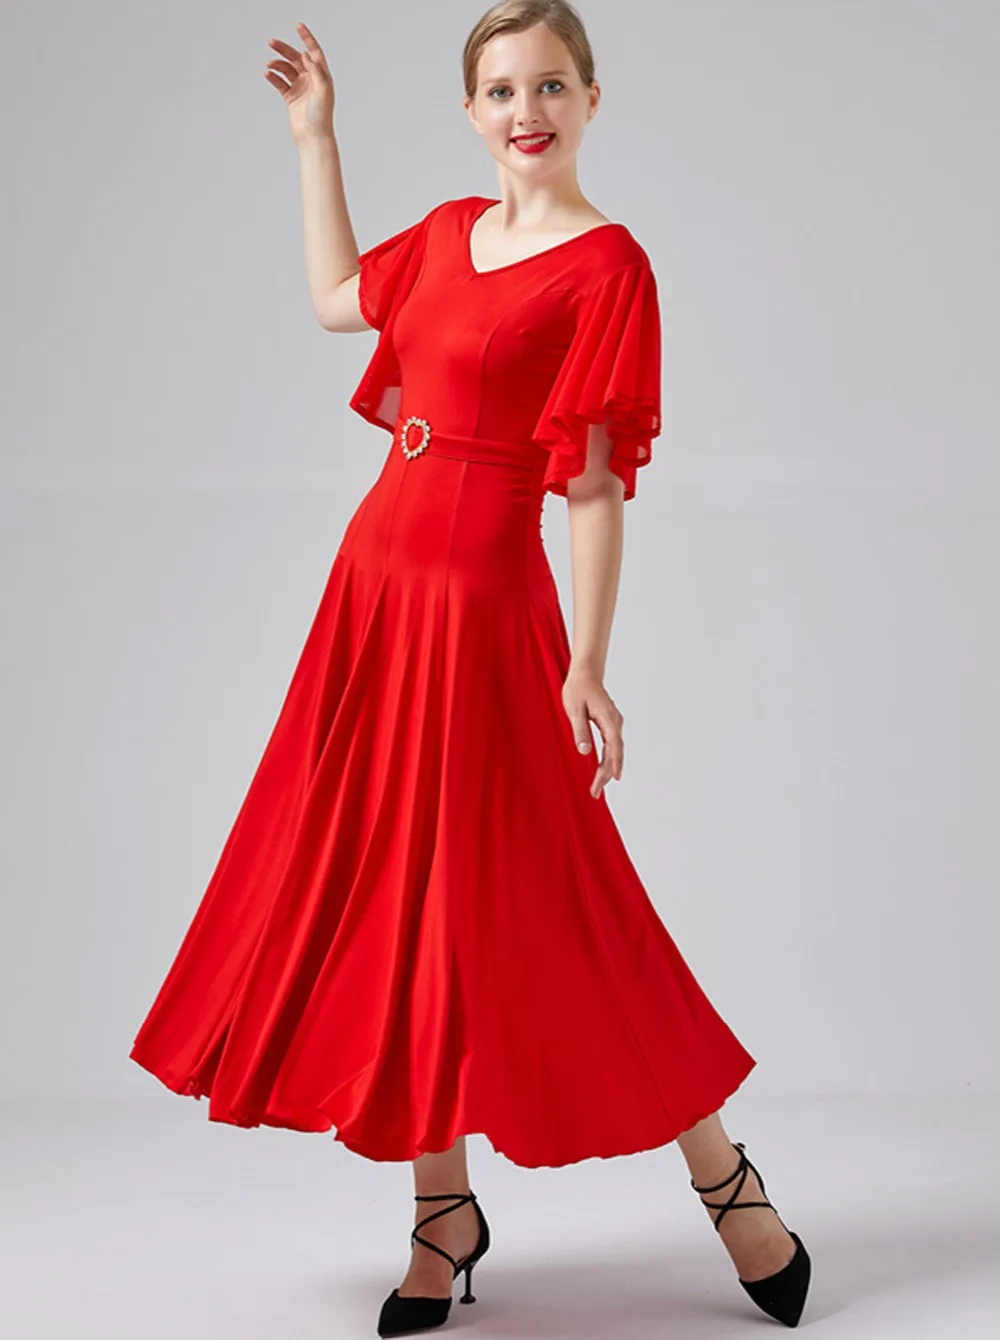 Бальное платье для современного танца фламенко Вальс с оборками и v-образным вырезом, стандартный тренировочный костюм